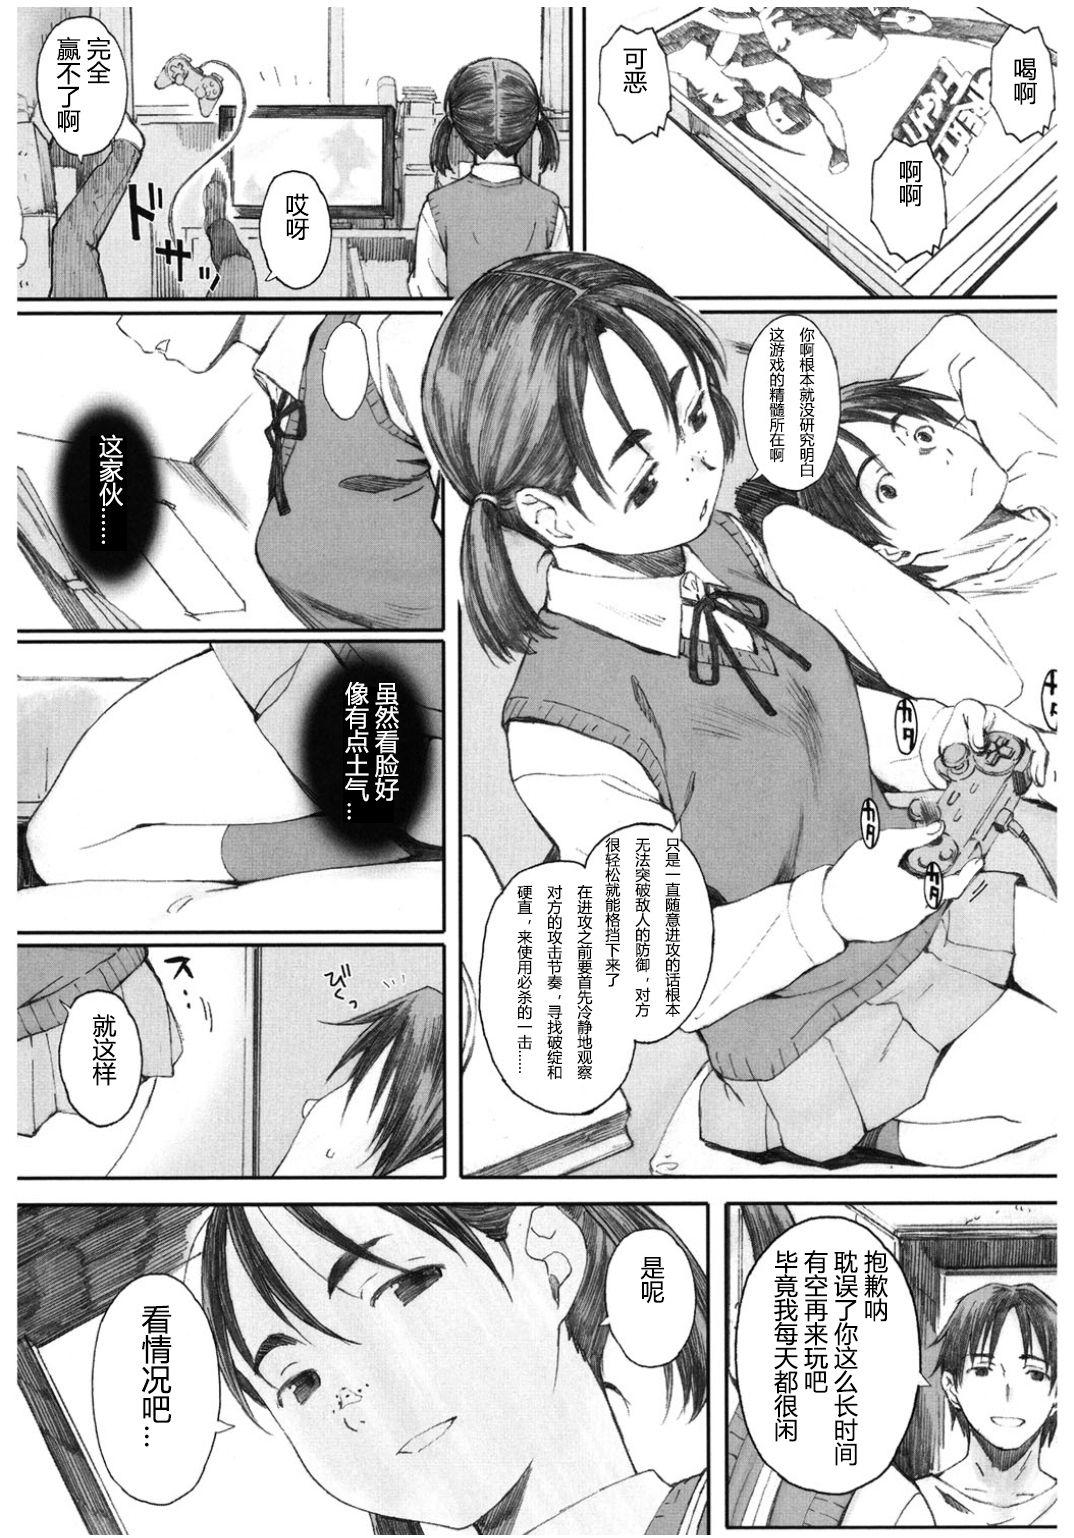 Ballbusting Yugame Strip - Page 3